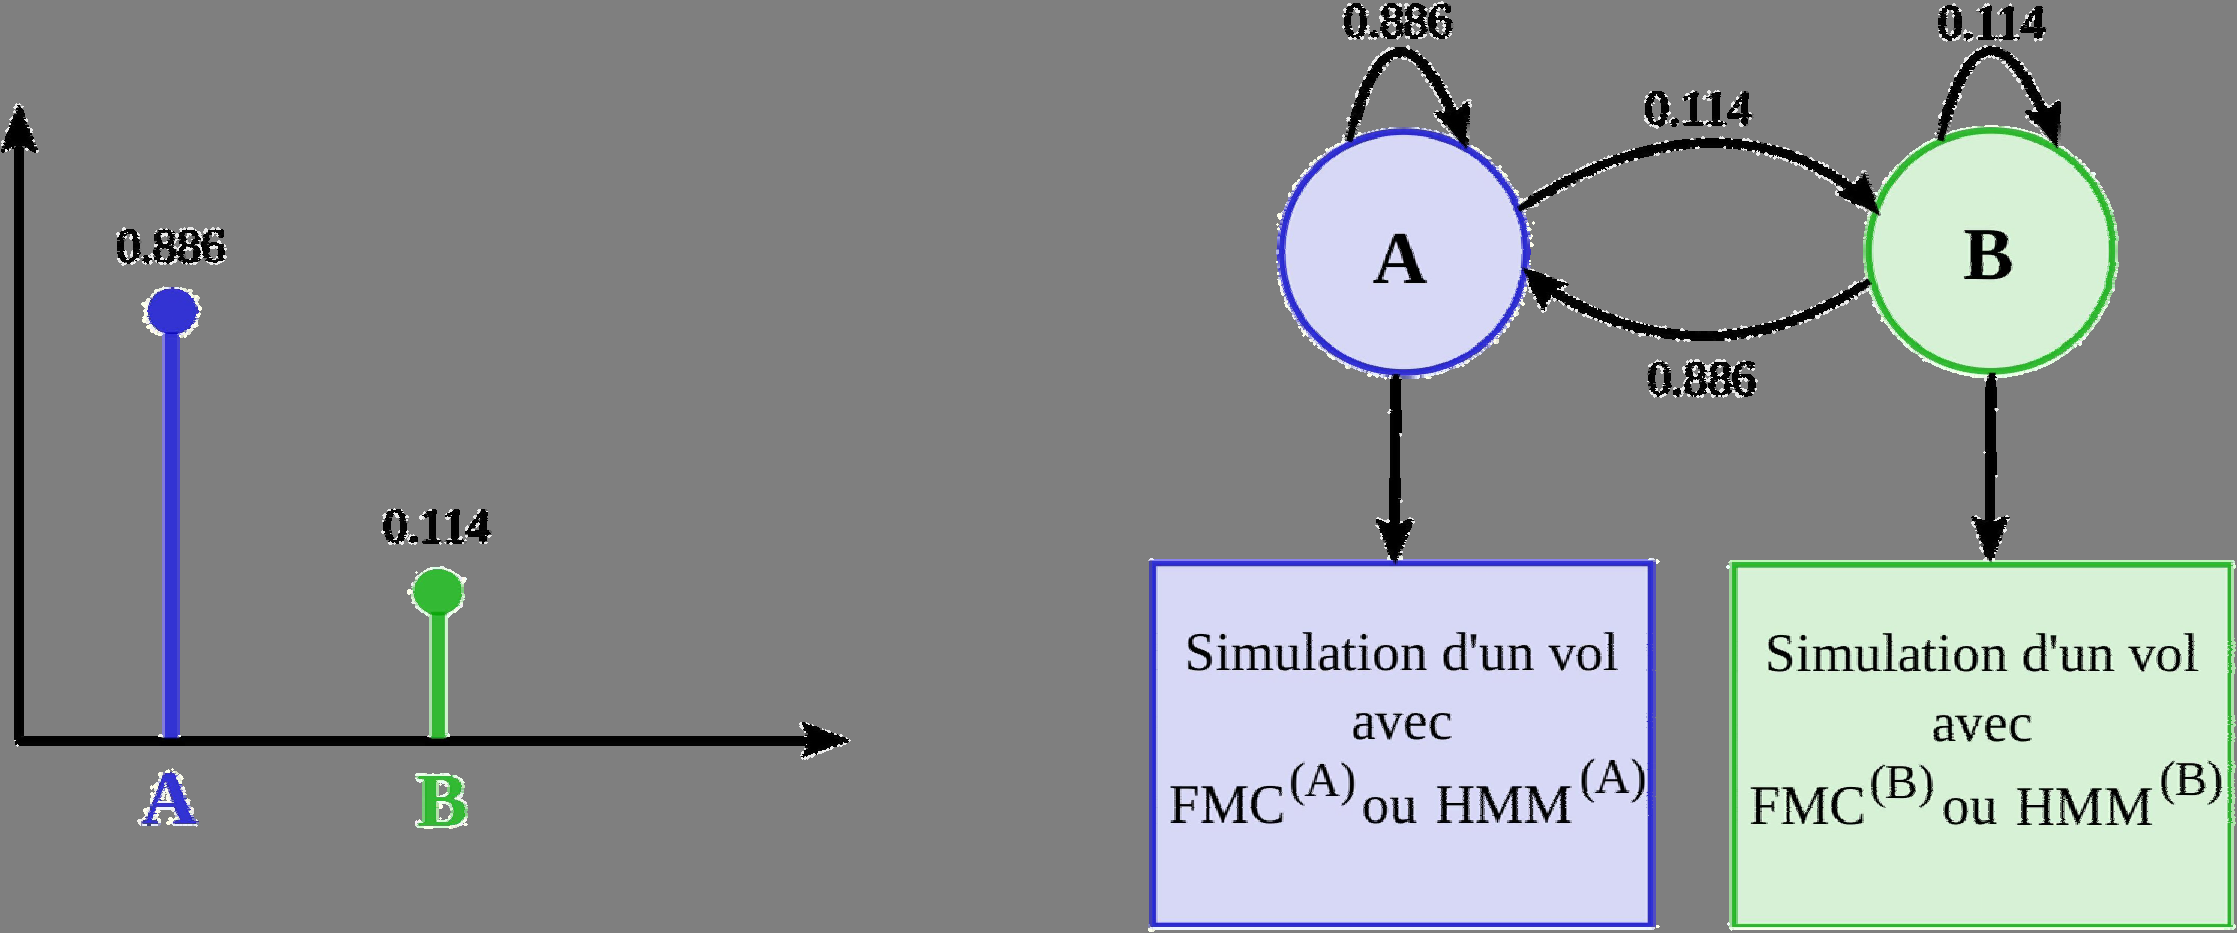 Niveau Modèle de Markov caché ( HMM ).5.4.3 GROUPE A.2.